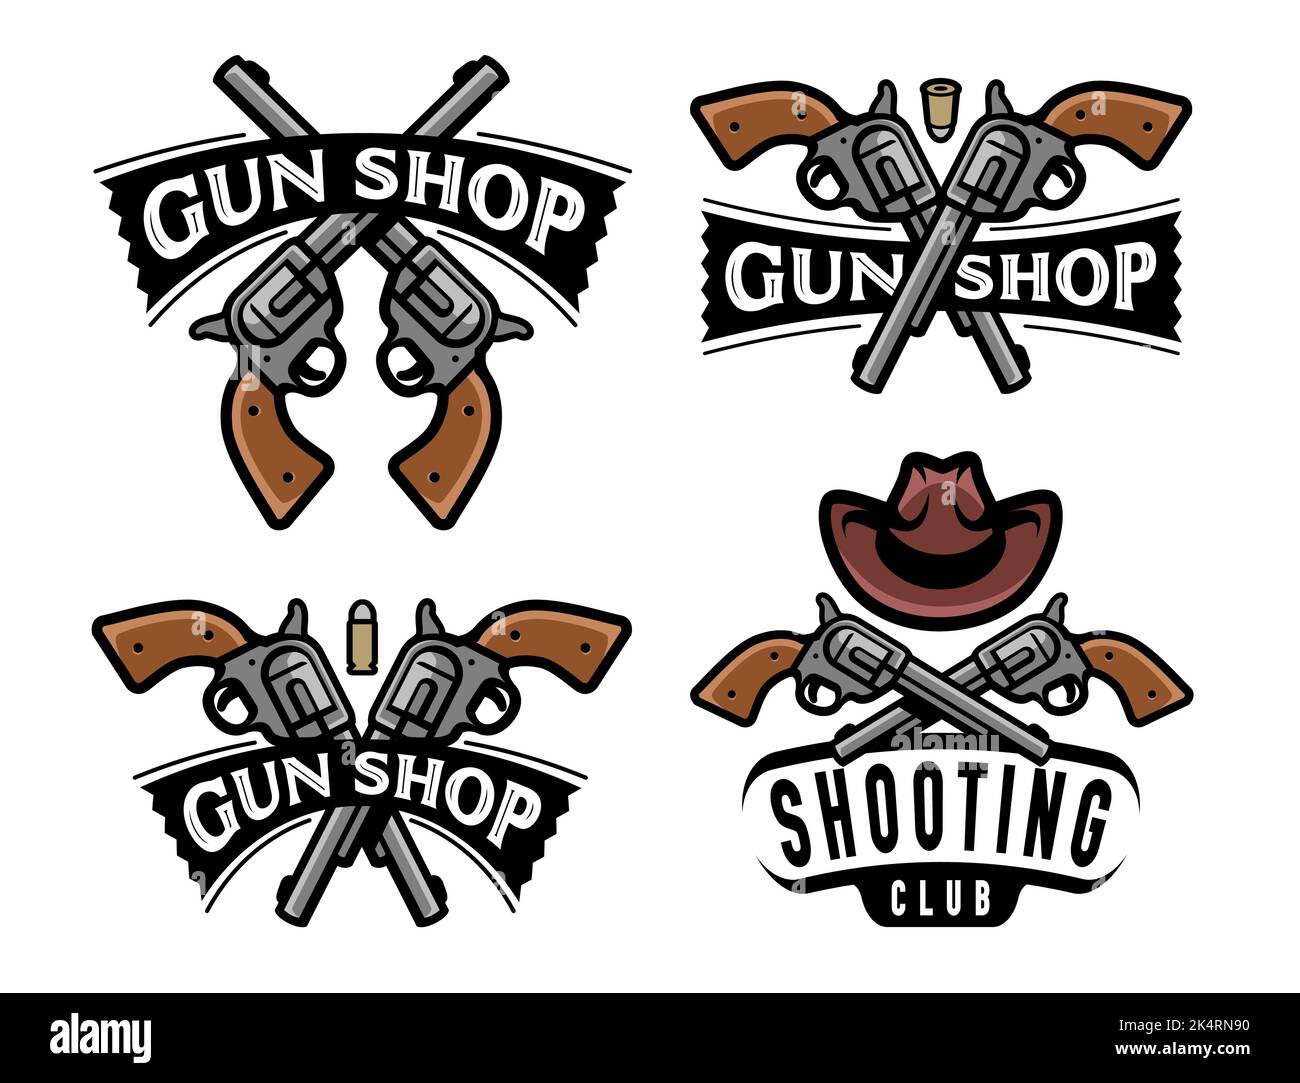 Negozio di armi da fuoco, badge o logo Shooting Club. Pistola, set di simboli revolver. Illustrazione vettoriale dell'emblema dell'arma Illustrazione Vettoriale